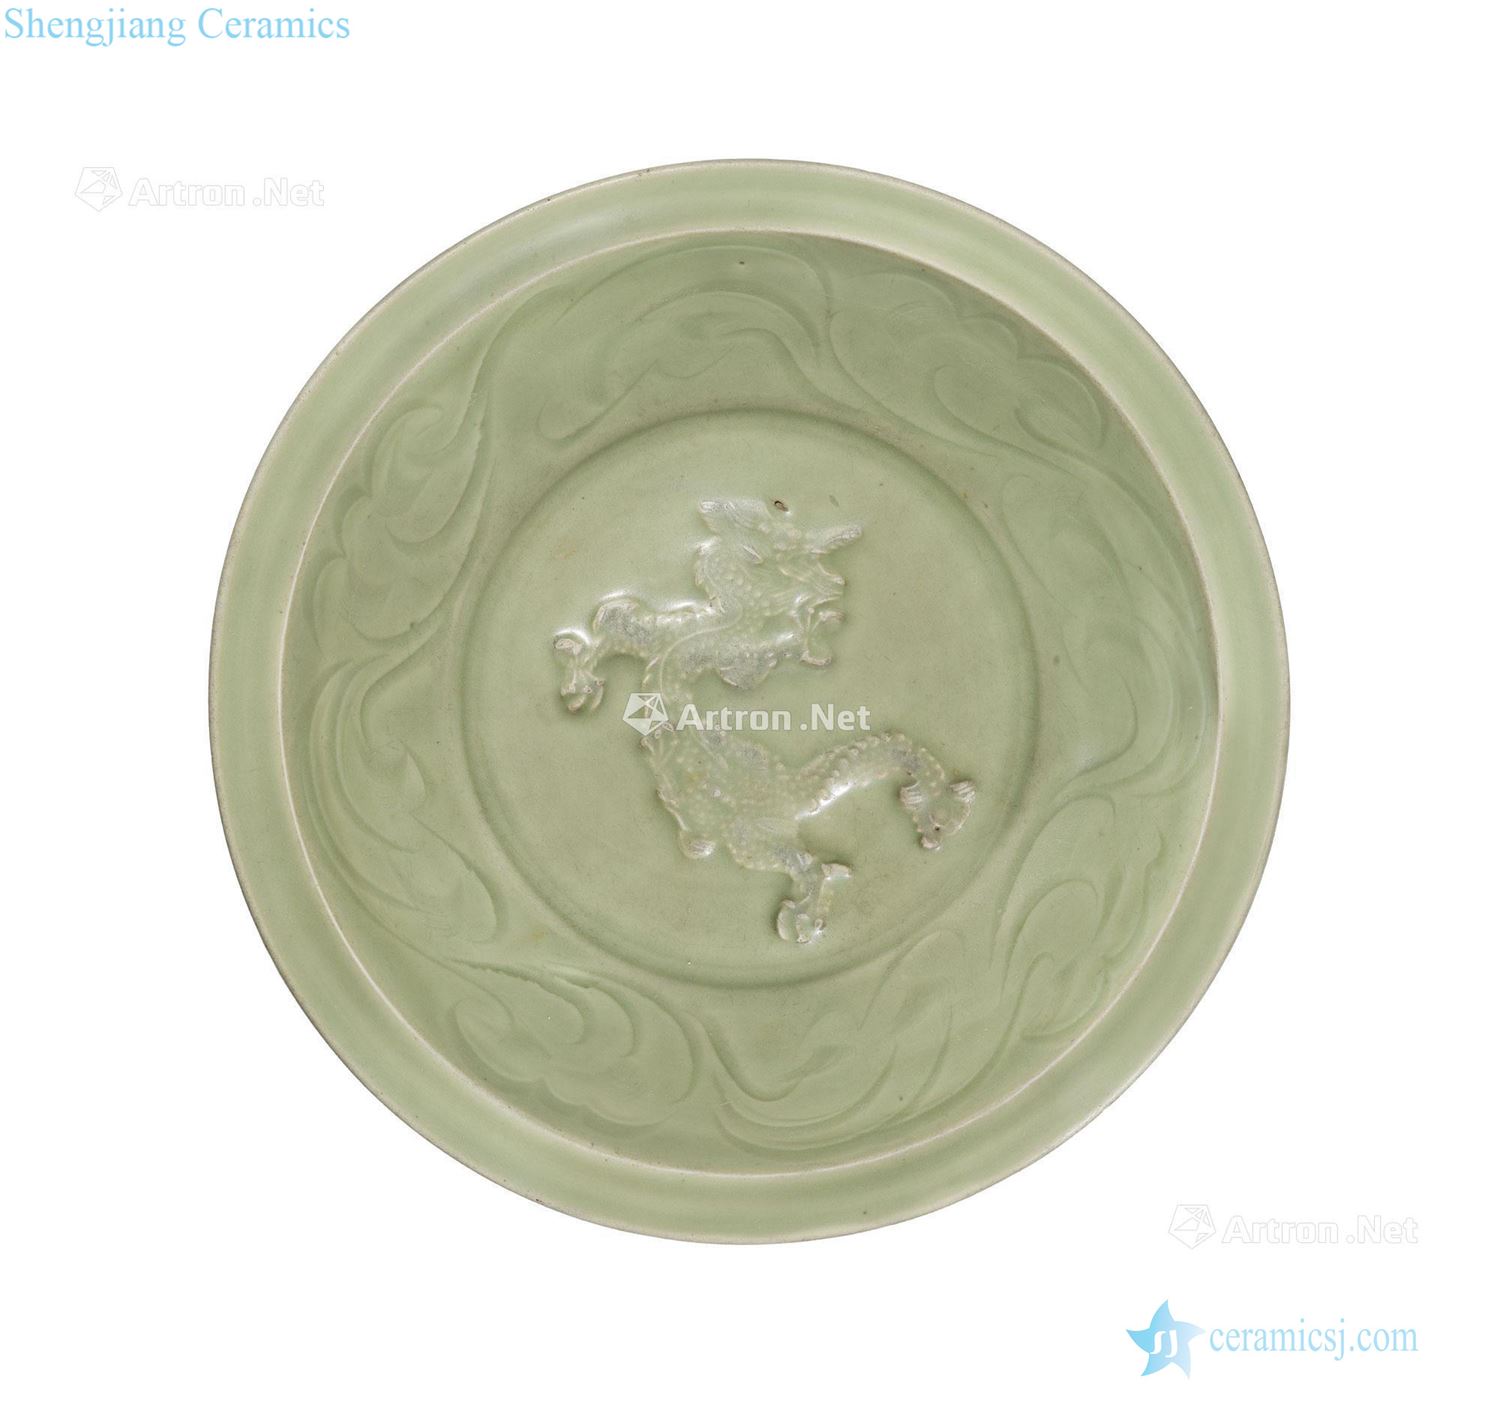 The fourteenth century Longquan green glaze panlong tray